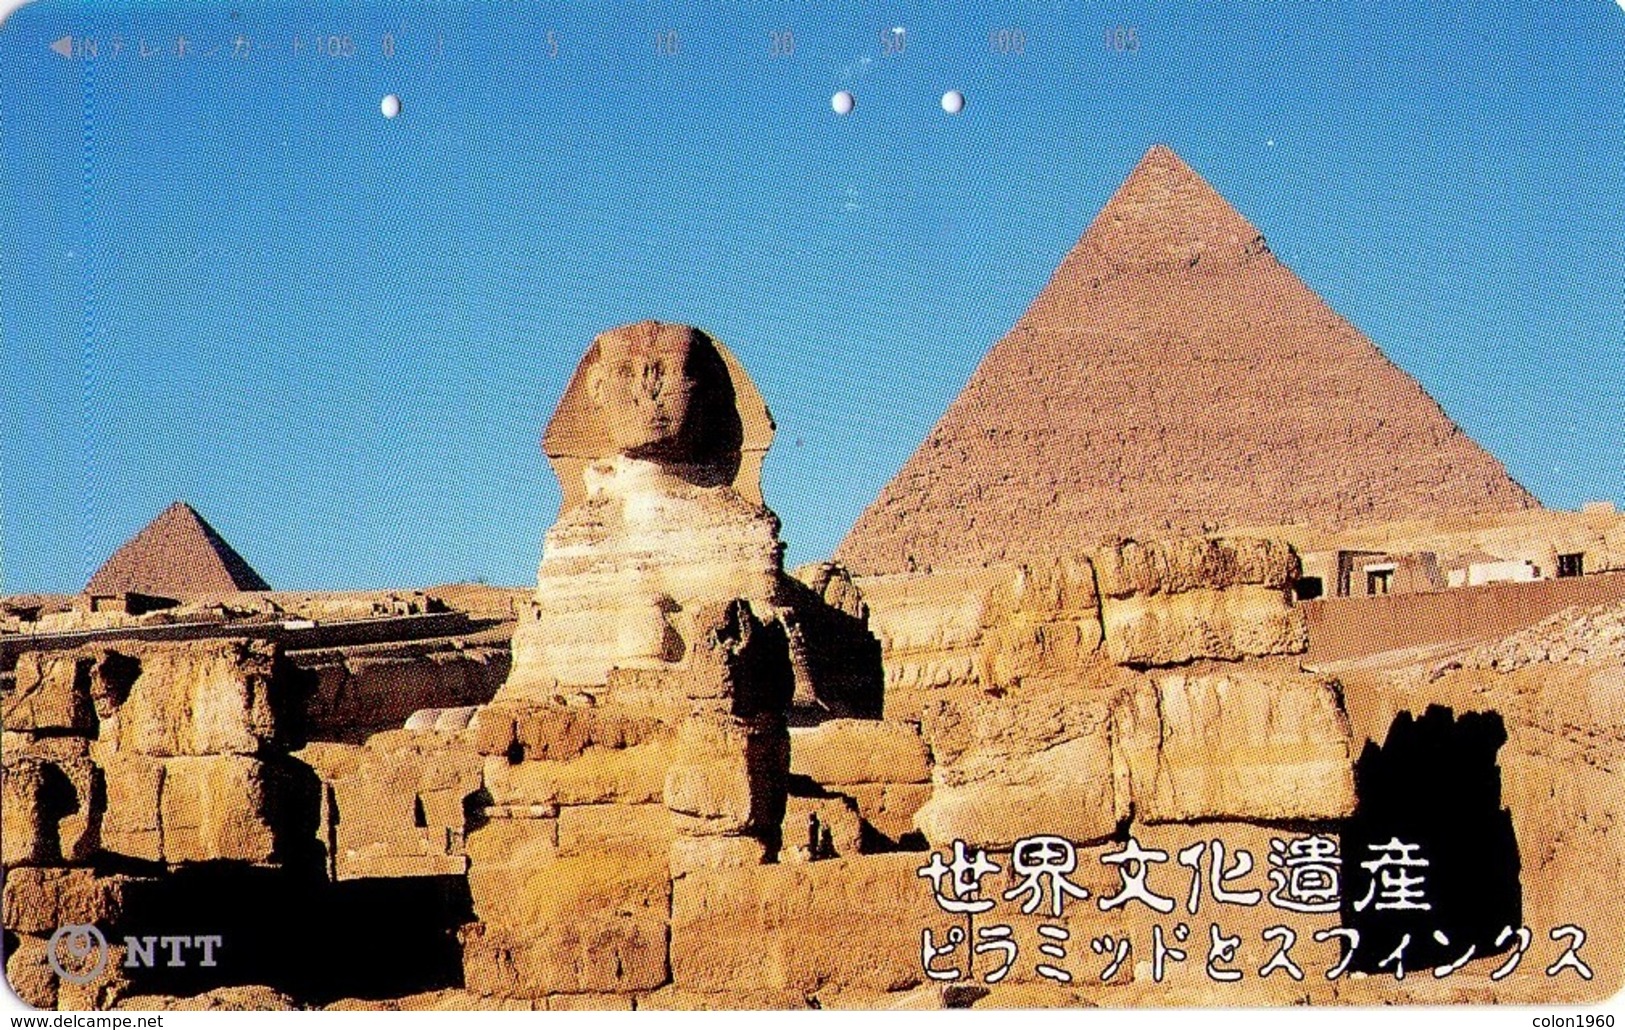 JAPON. Egypt, Sphinx And Pyramids - Wcm. JP-331-452 D. (045) - Japón